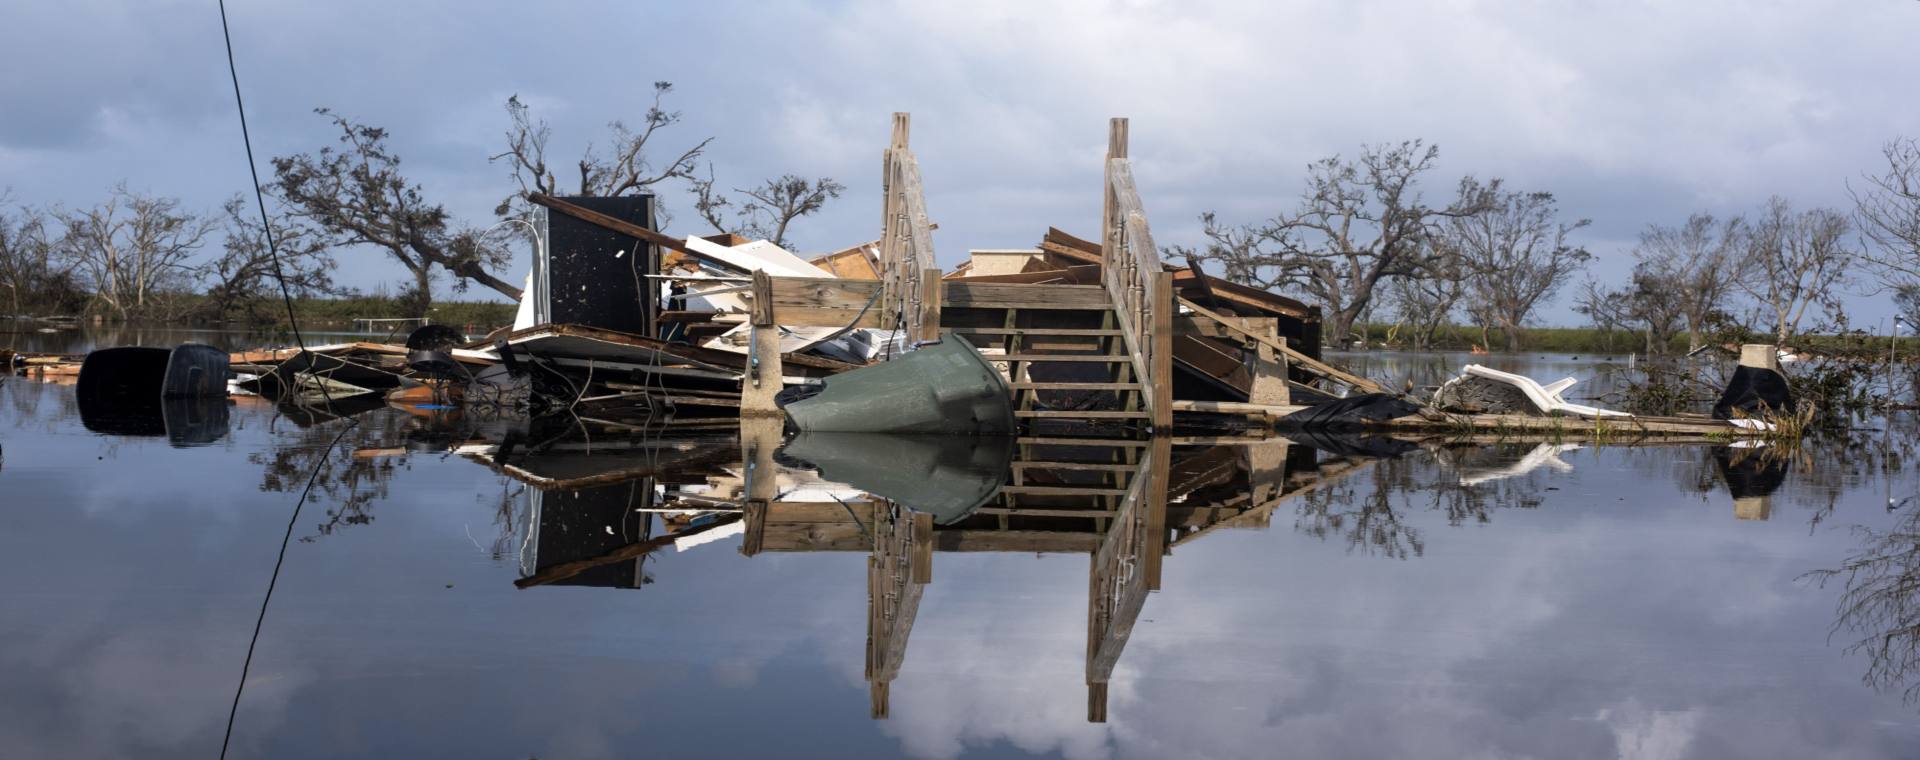 Puing rumah hancur akibat badai yang terendam banjir di Louisiana, Amerika Serikat./Bloomberg-Mark Felix